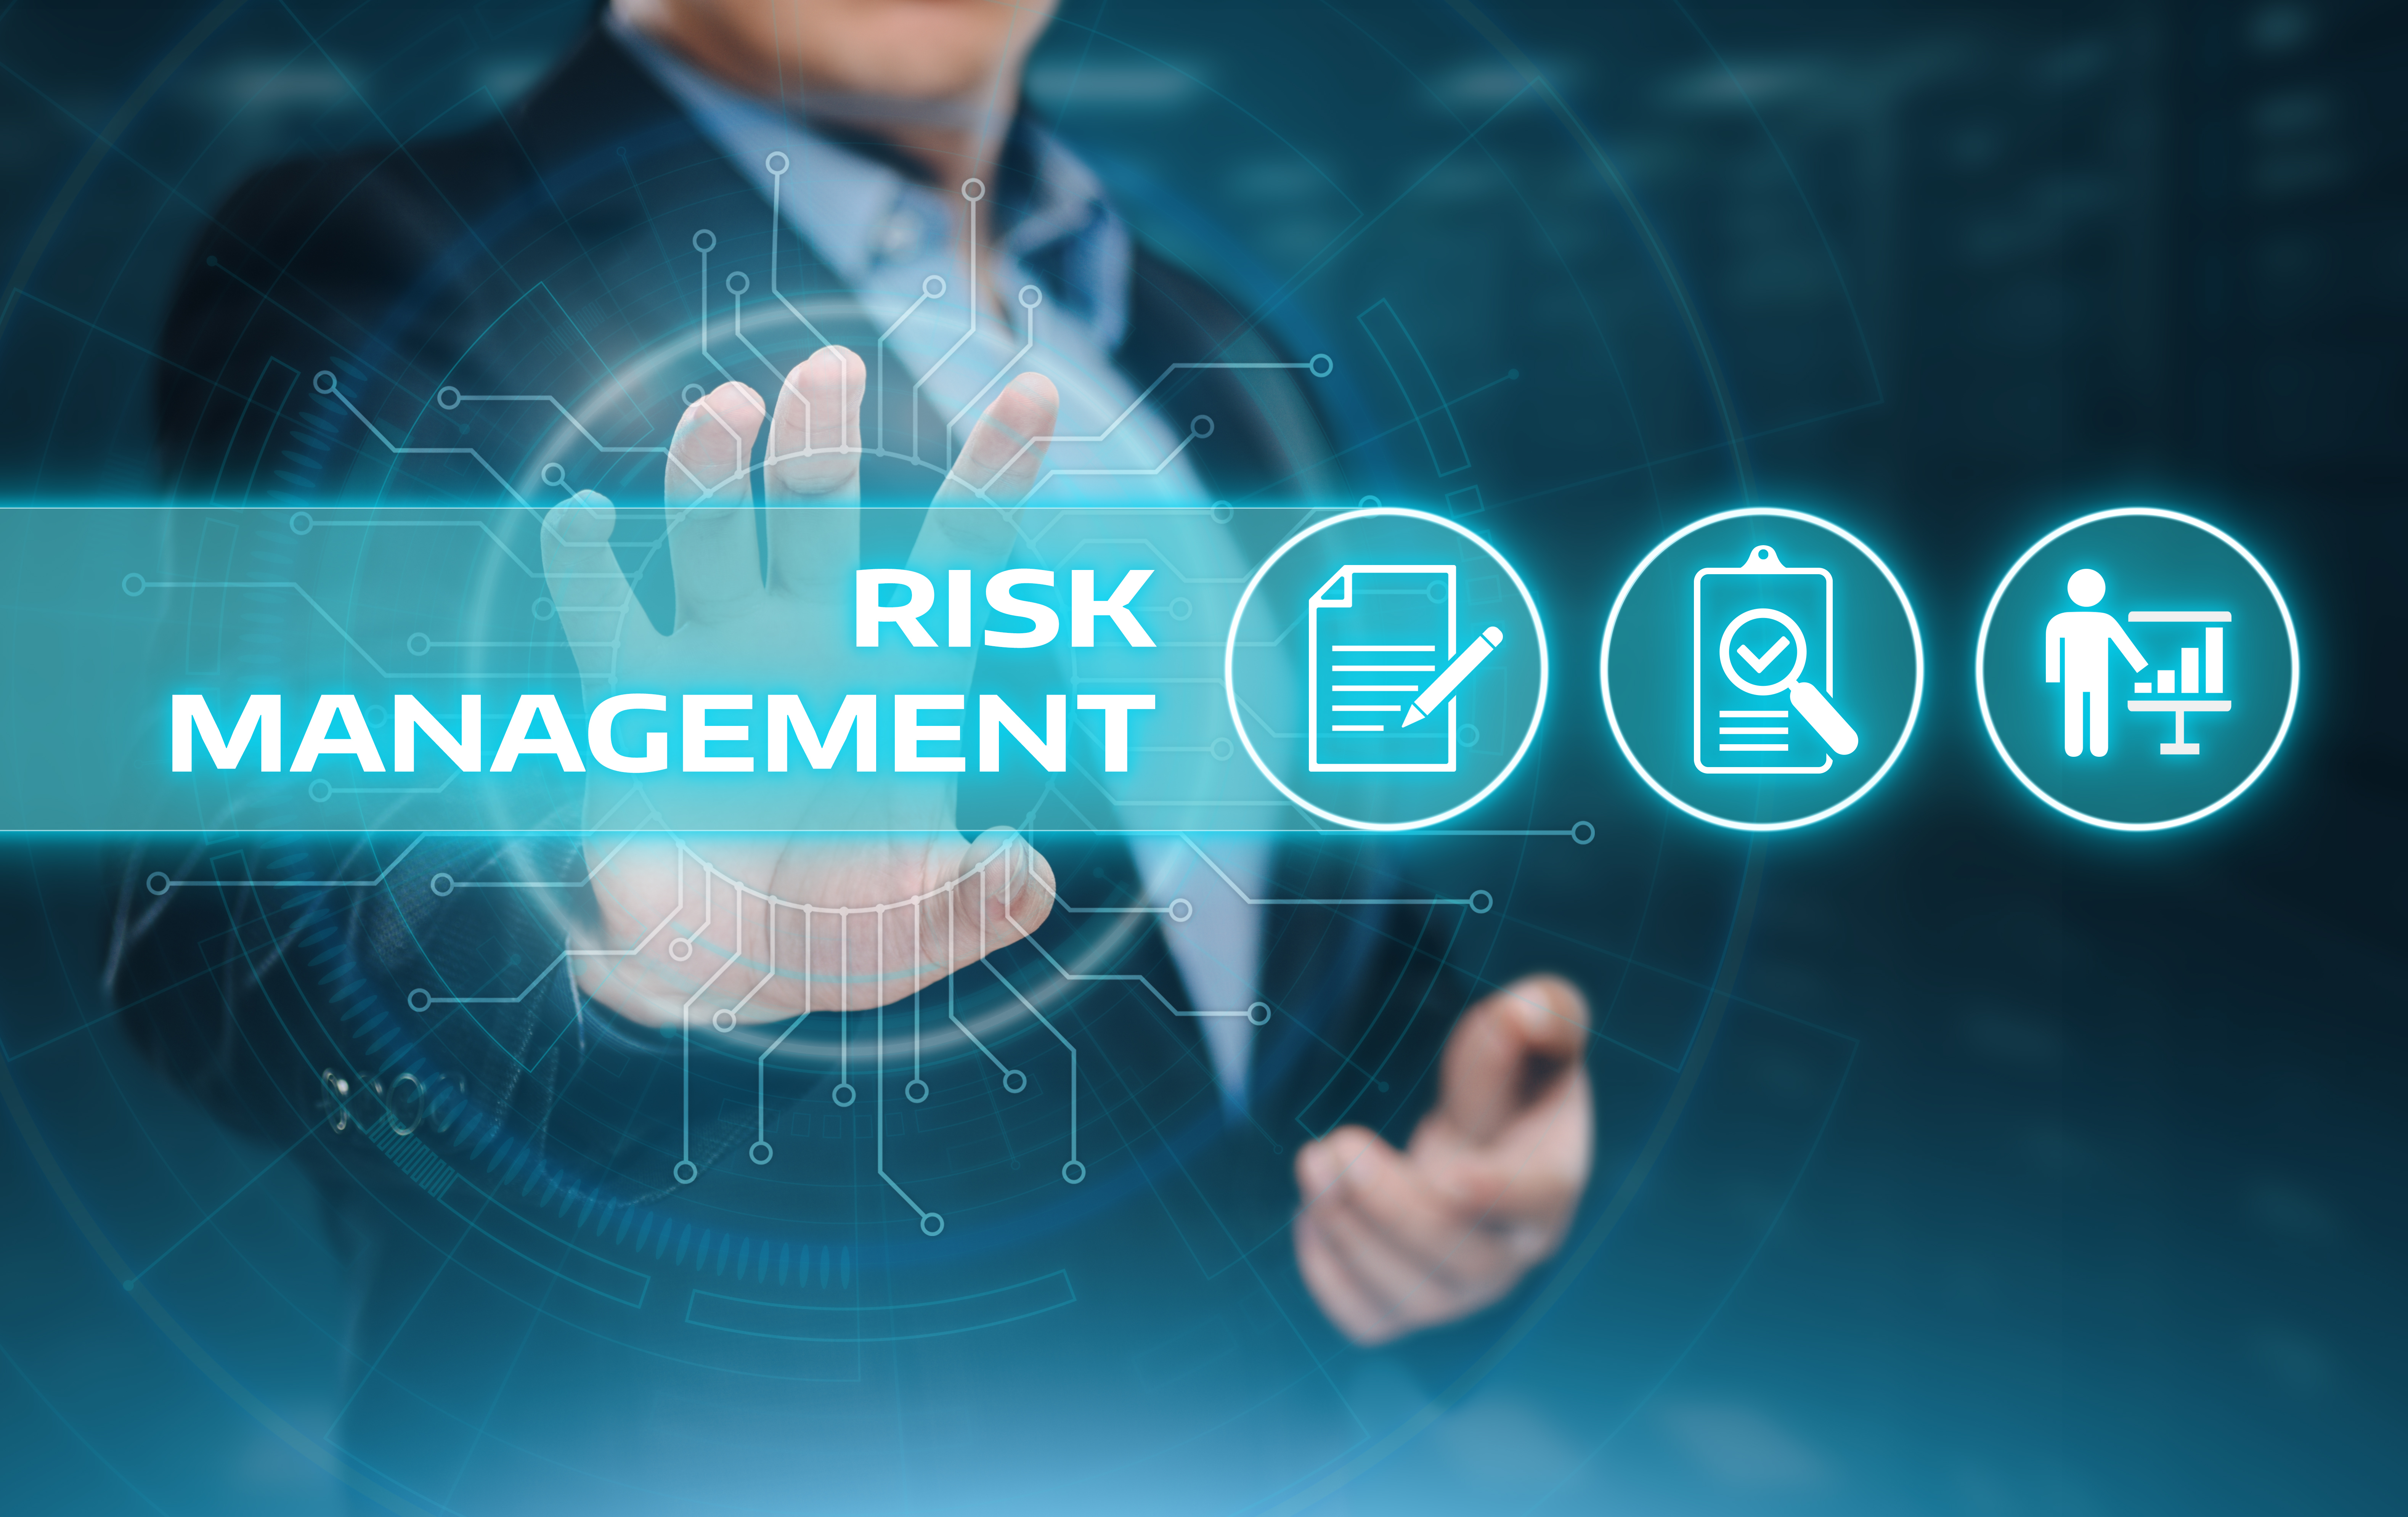 quản trị rủi ro là gì?